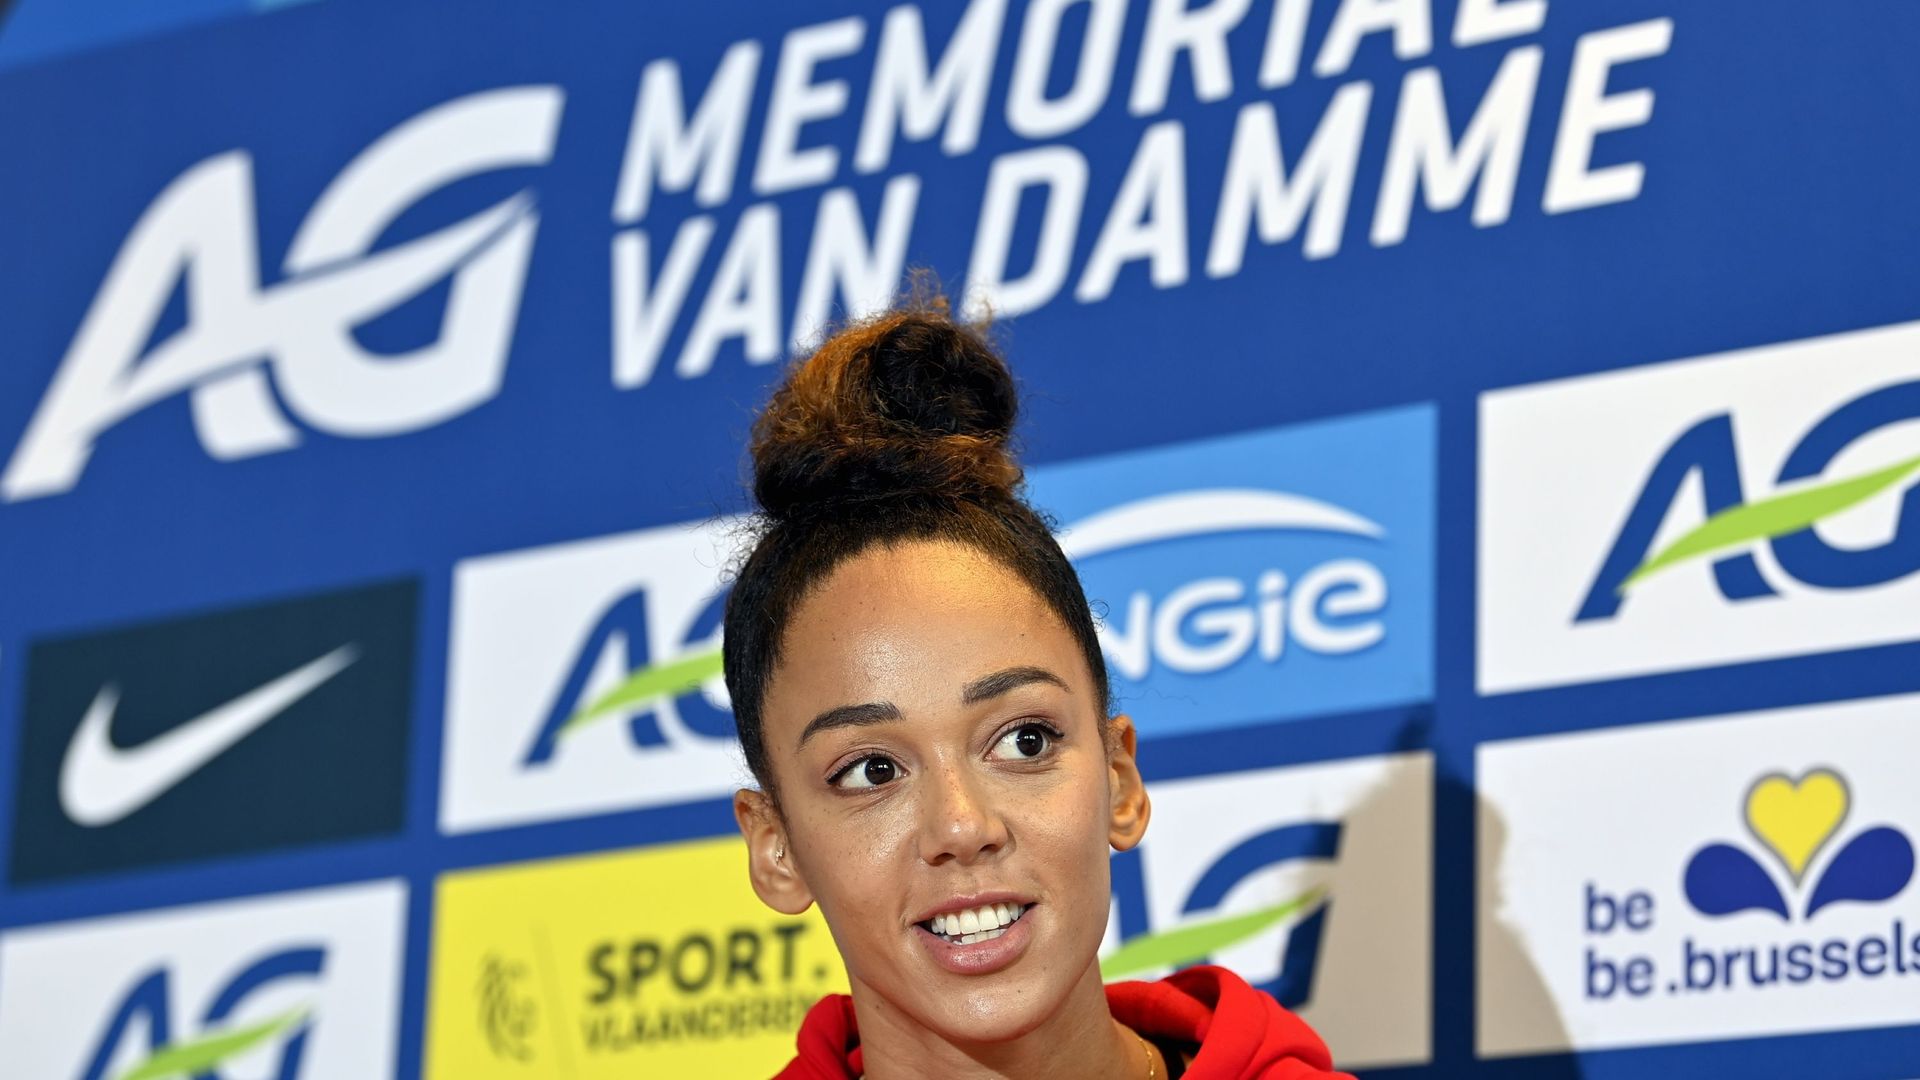 Katarina Johnson-Thompson participera aux 100m haies et au saut en hauteur au Mémorial Van Damme, vendredi à Bruxelles.